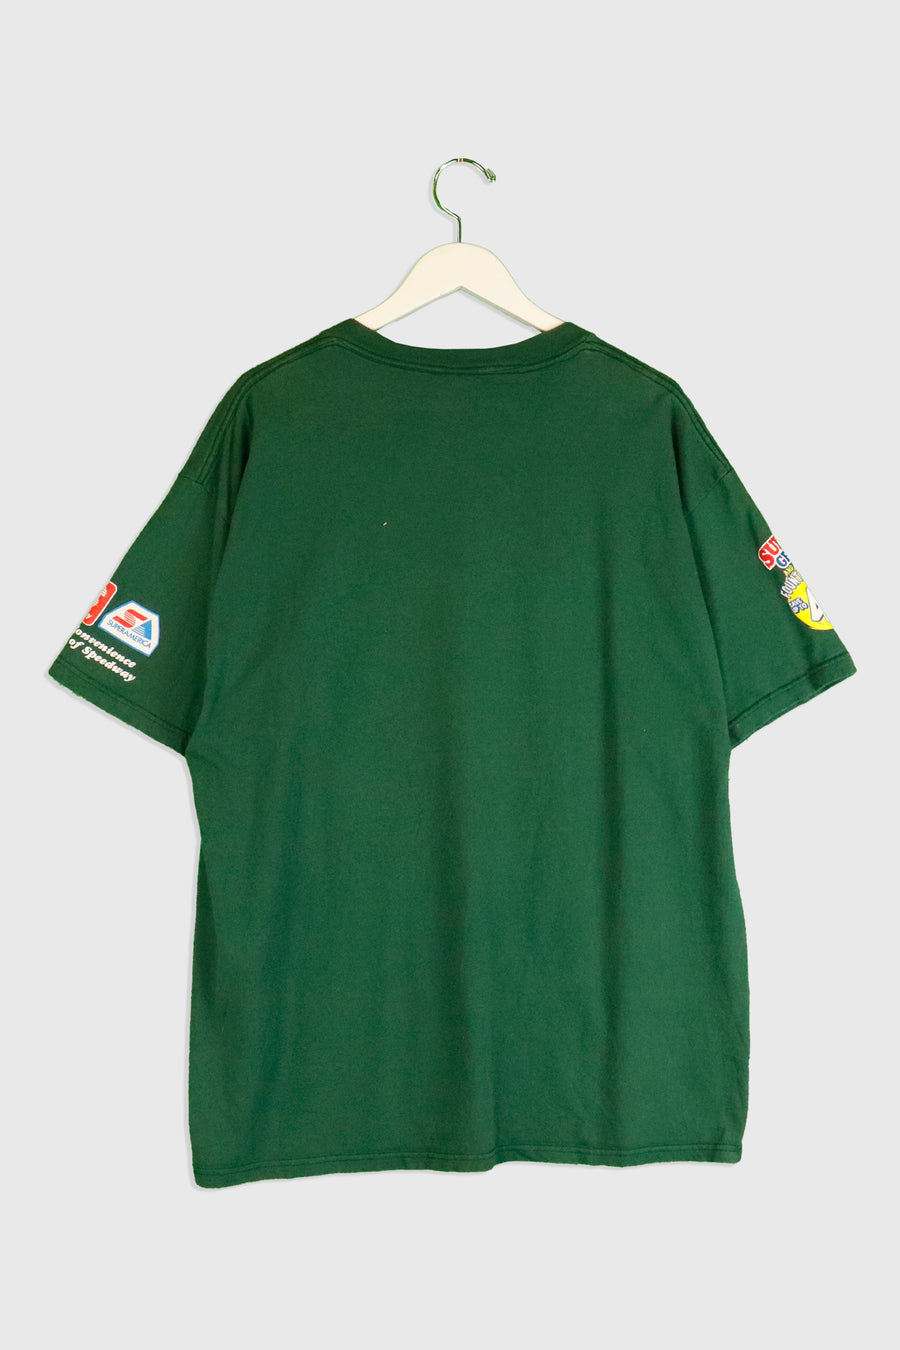 Vintage Speedway Super Grab Deal Branding T Shirt Sz XL